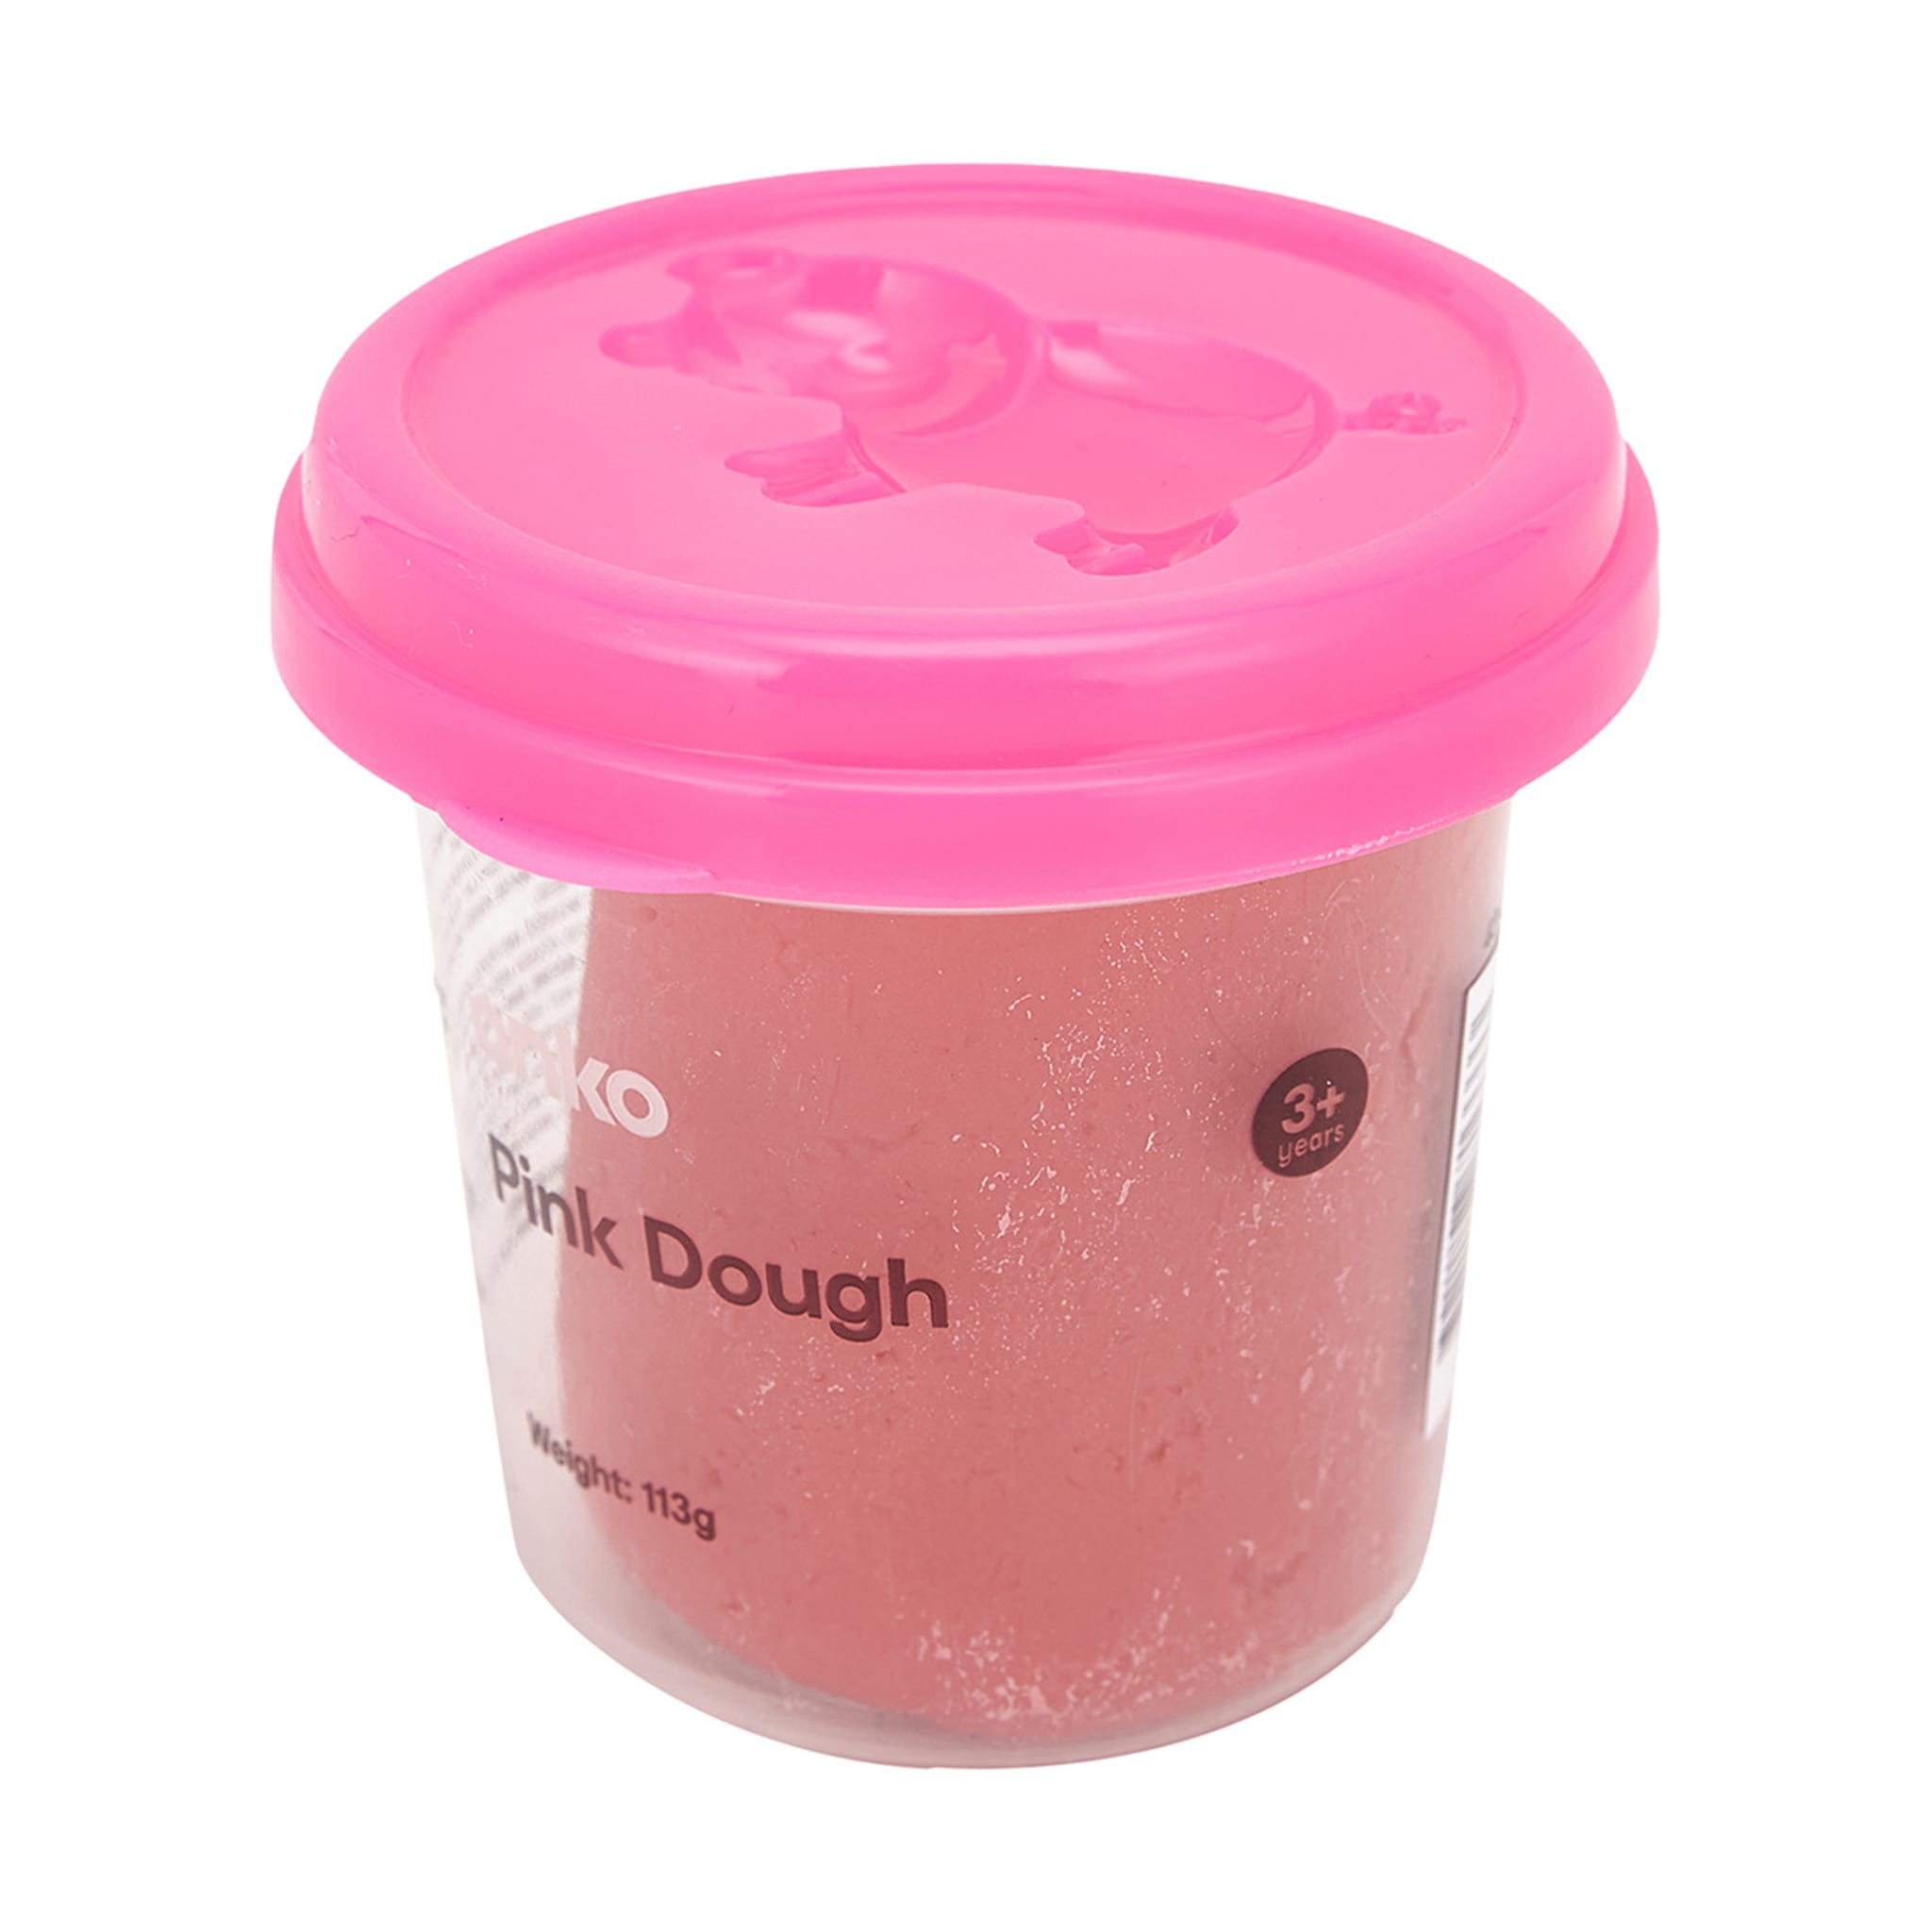 Pink Dough - Kmart